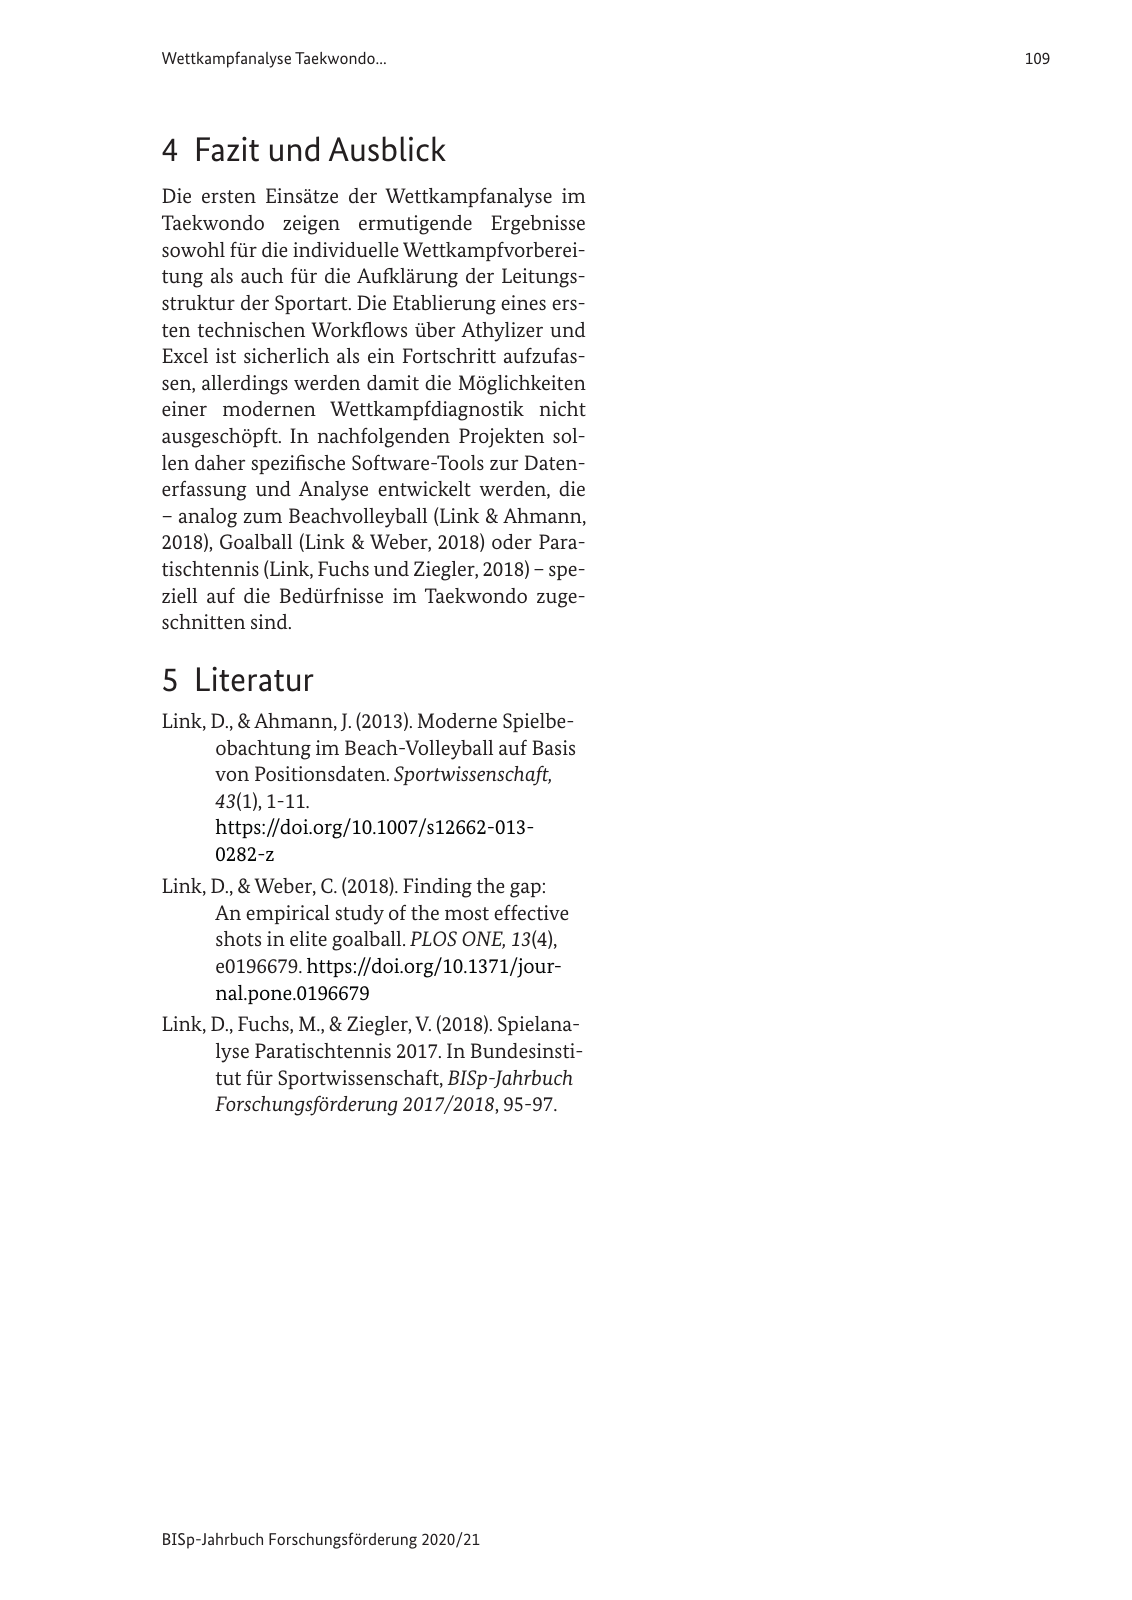 Vorschau BISp-Jahrbuch 2020/21 Seite 111